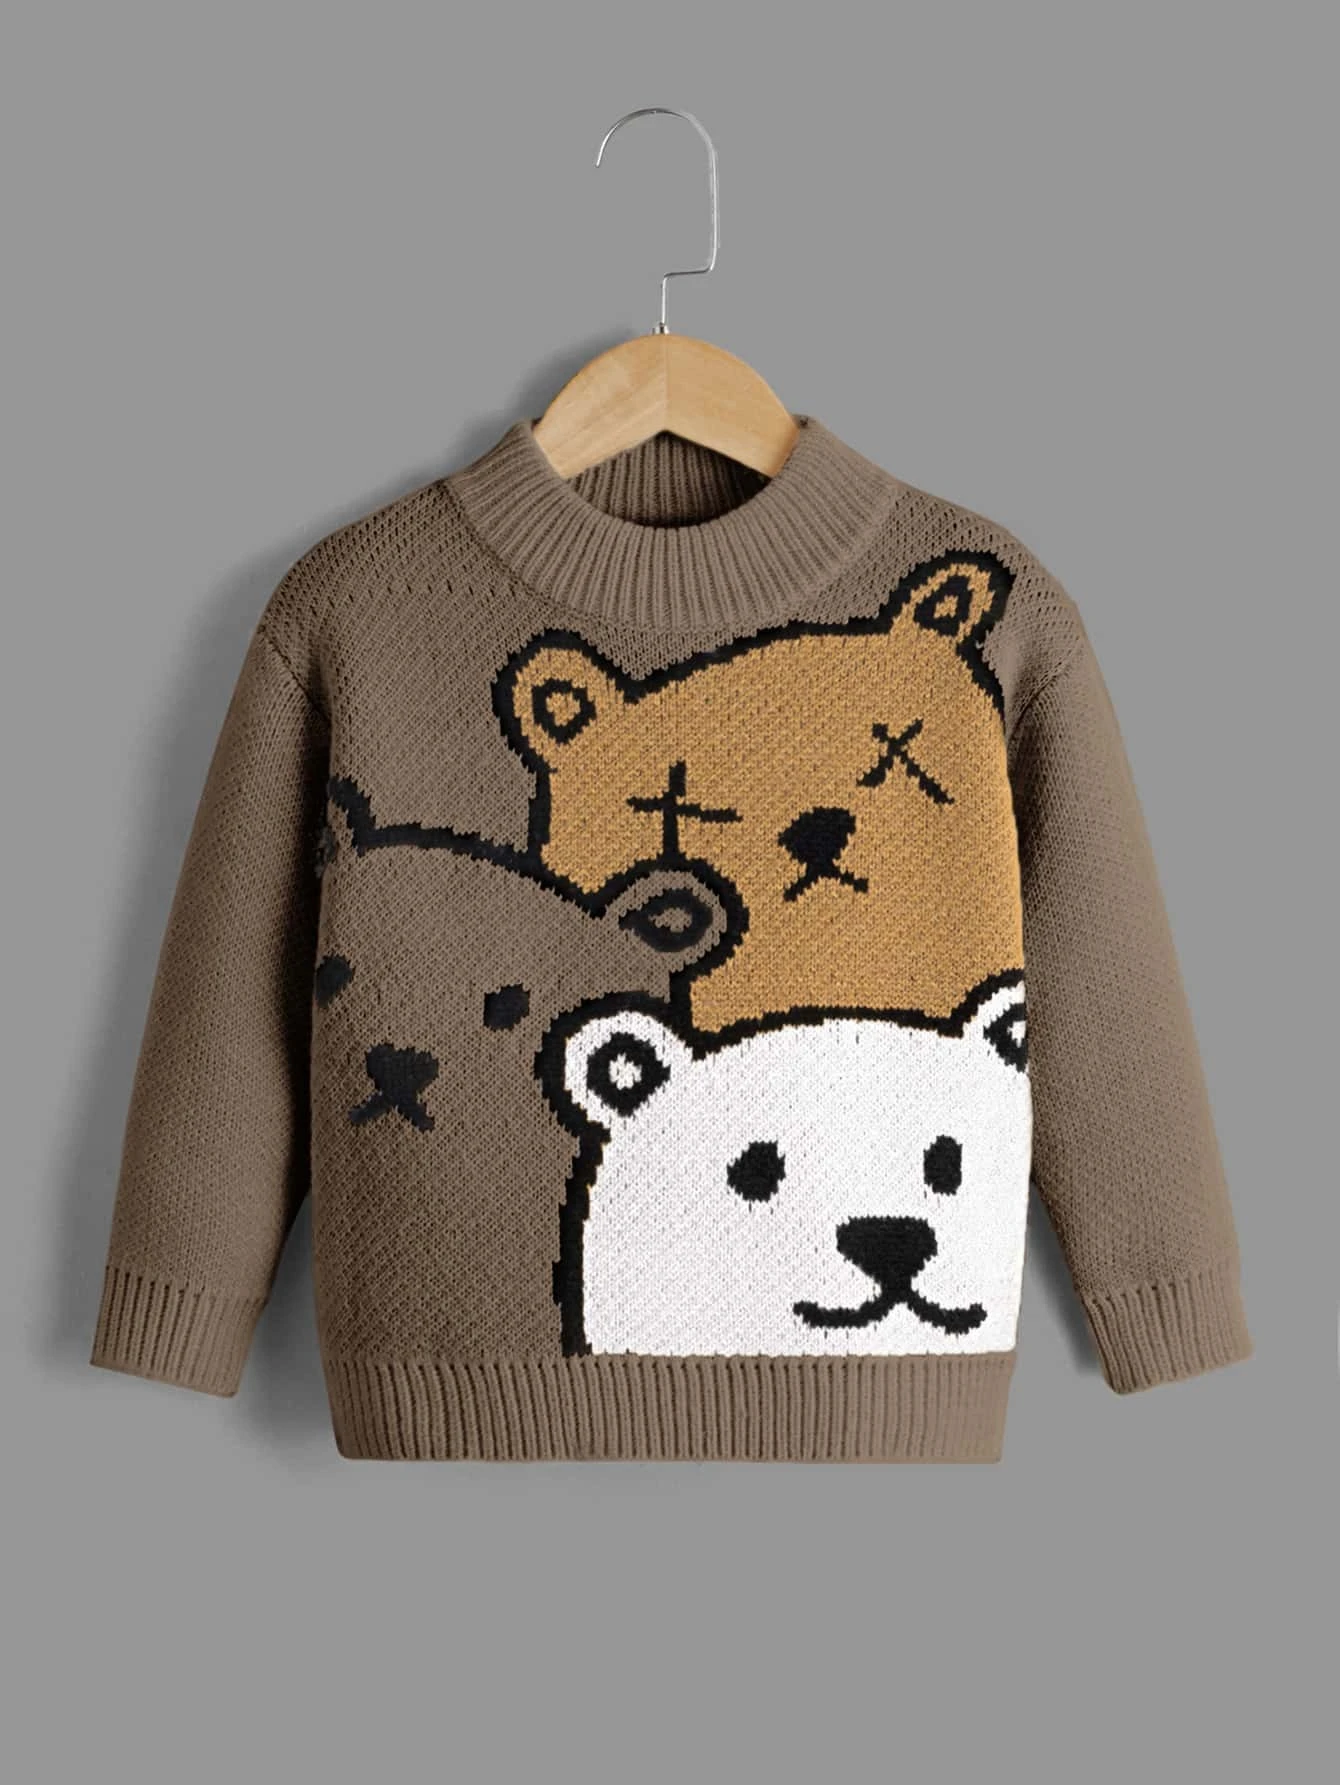 Pulover din tricot, cu imprimeu ursi, maro, baieti, Shein